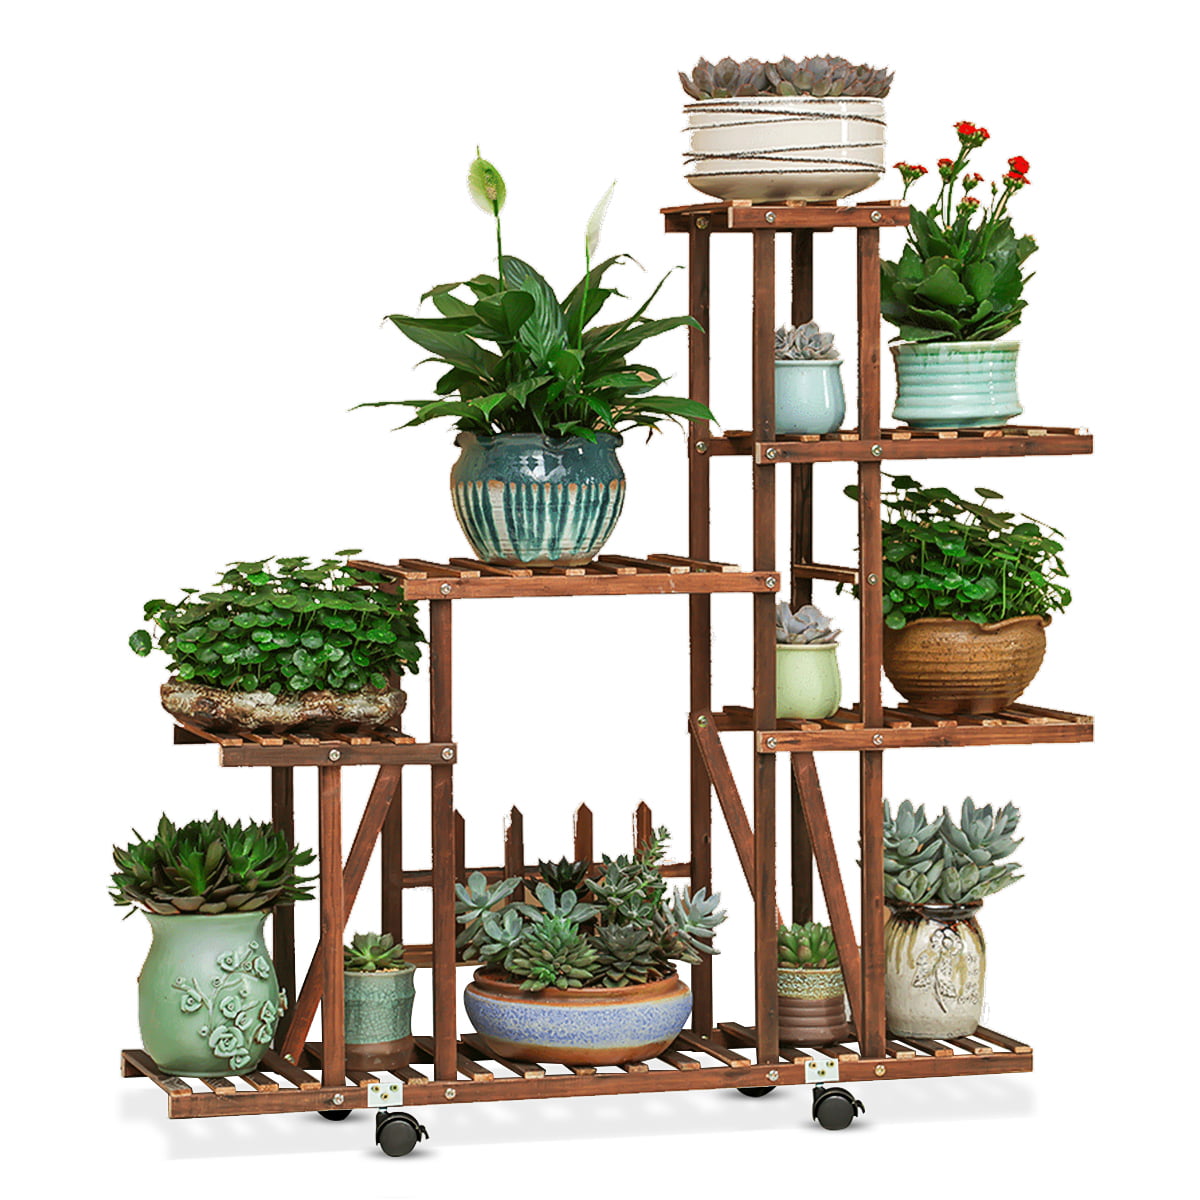 4 Tier Garden Wooden Plant Stand Pot Holder Display Shelf In/Outdoor Display US 